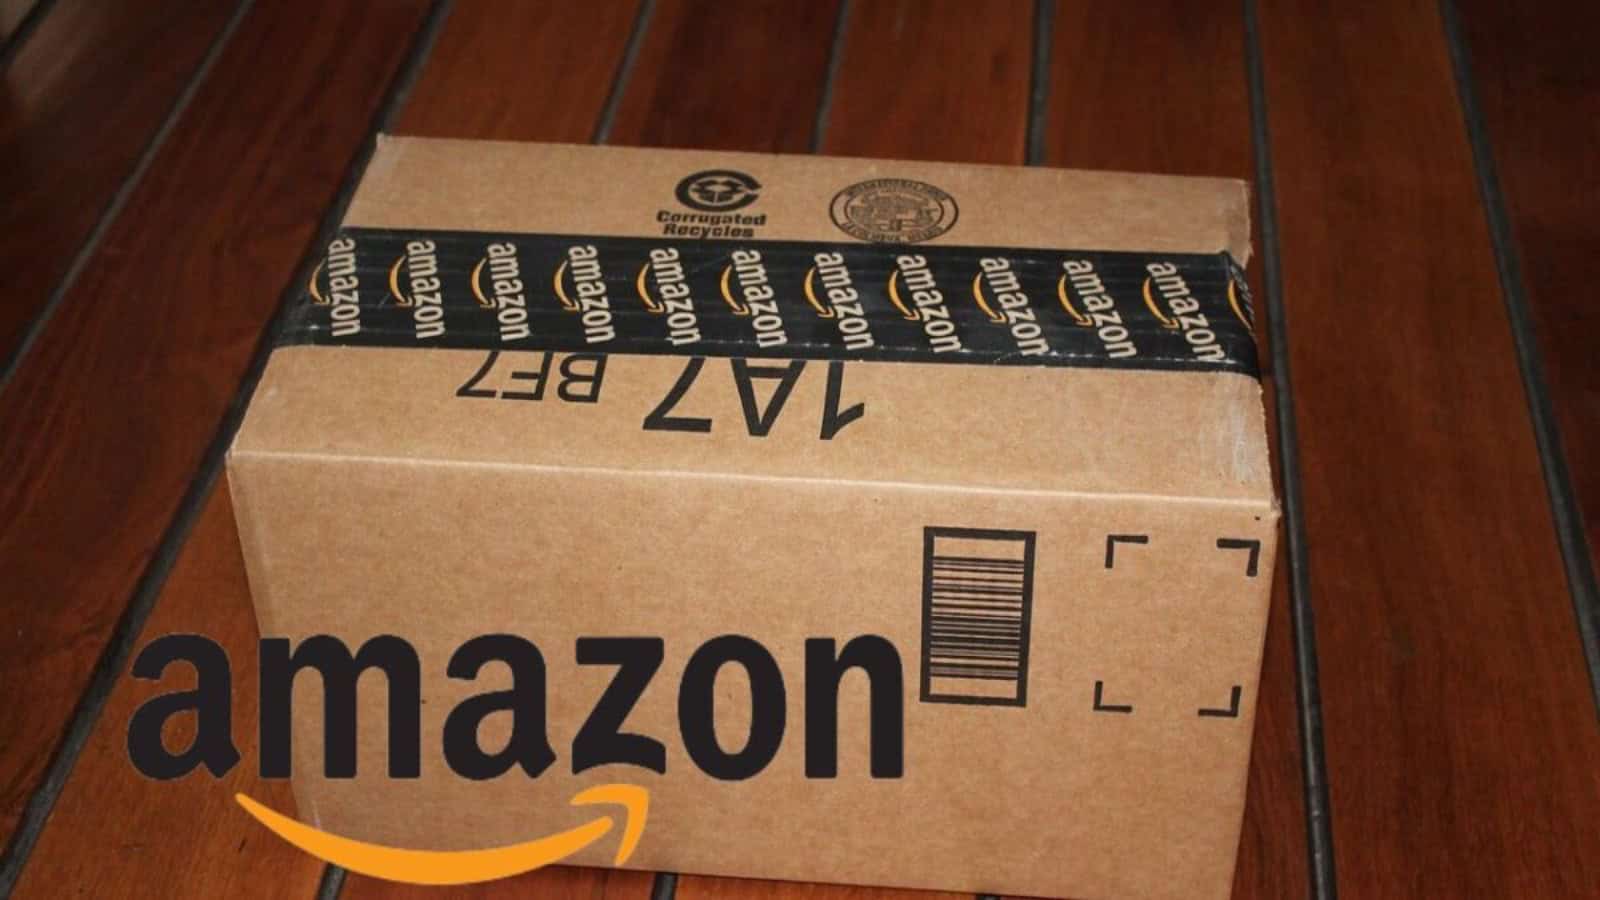 Amazon, offerte di FINE SETTIMANA con il 40% di sconto